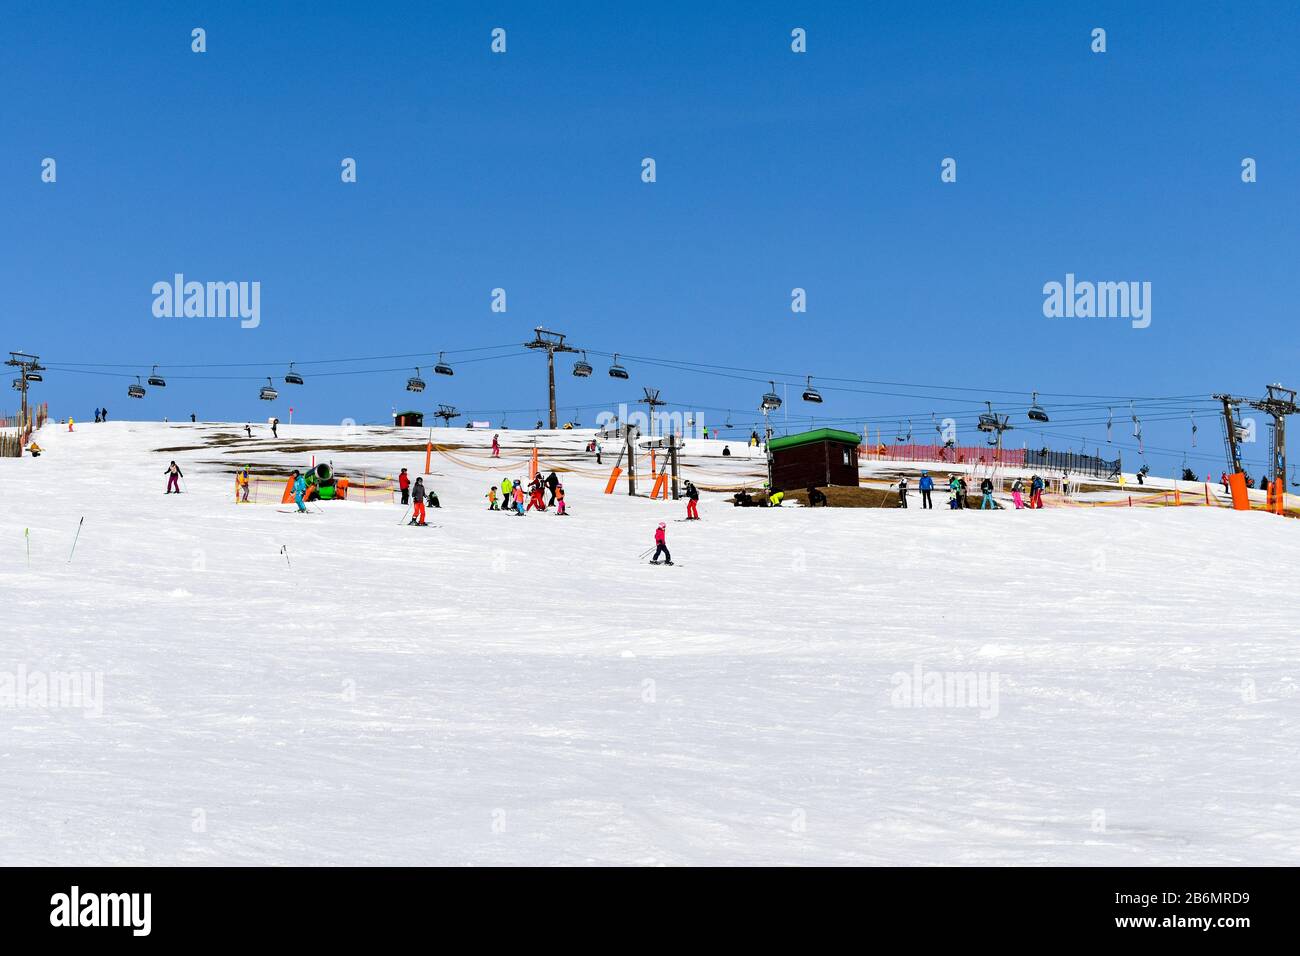 Feldberg, Alemania - 25 de enero de 2020: Pistas de esquí y esquiadores en Feldberg. Foto de stock